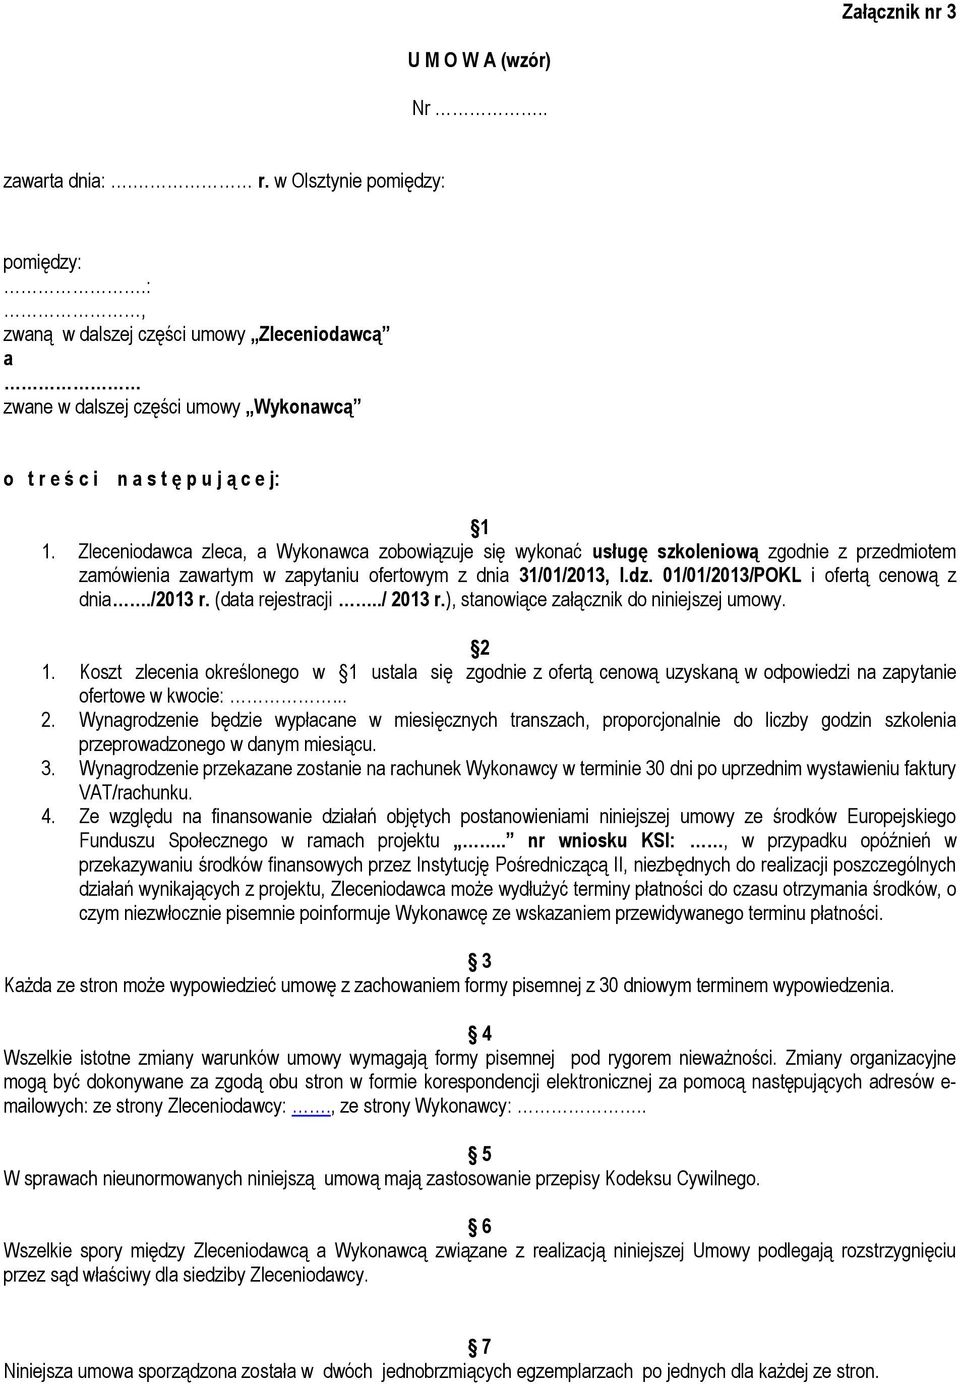 Zleceniodawca zleca, a Wykonawca zobowiązuje się wykonać usługę szkoleniową zgodnie z przedmiotem zamówienia zawartym w zapytaniu ofertowym z dnia 31/01/2013, l.dz.